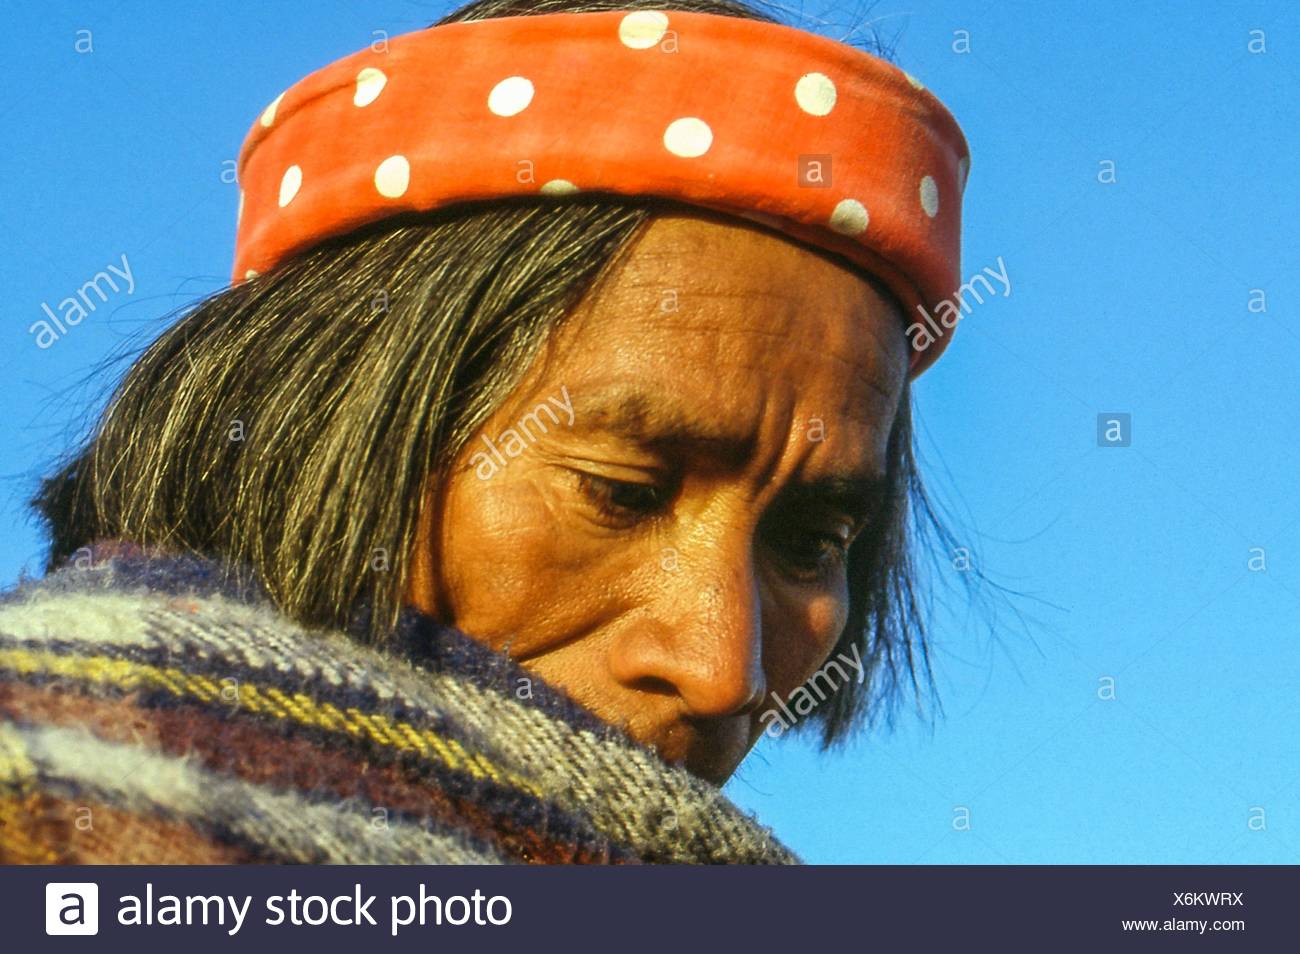 Tarahumara Raramuri Fotos E Imagenes De Stock Alamy